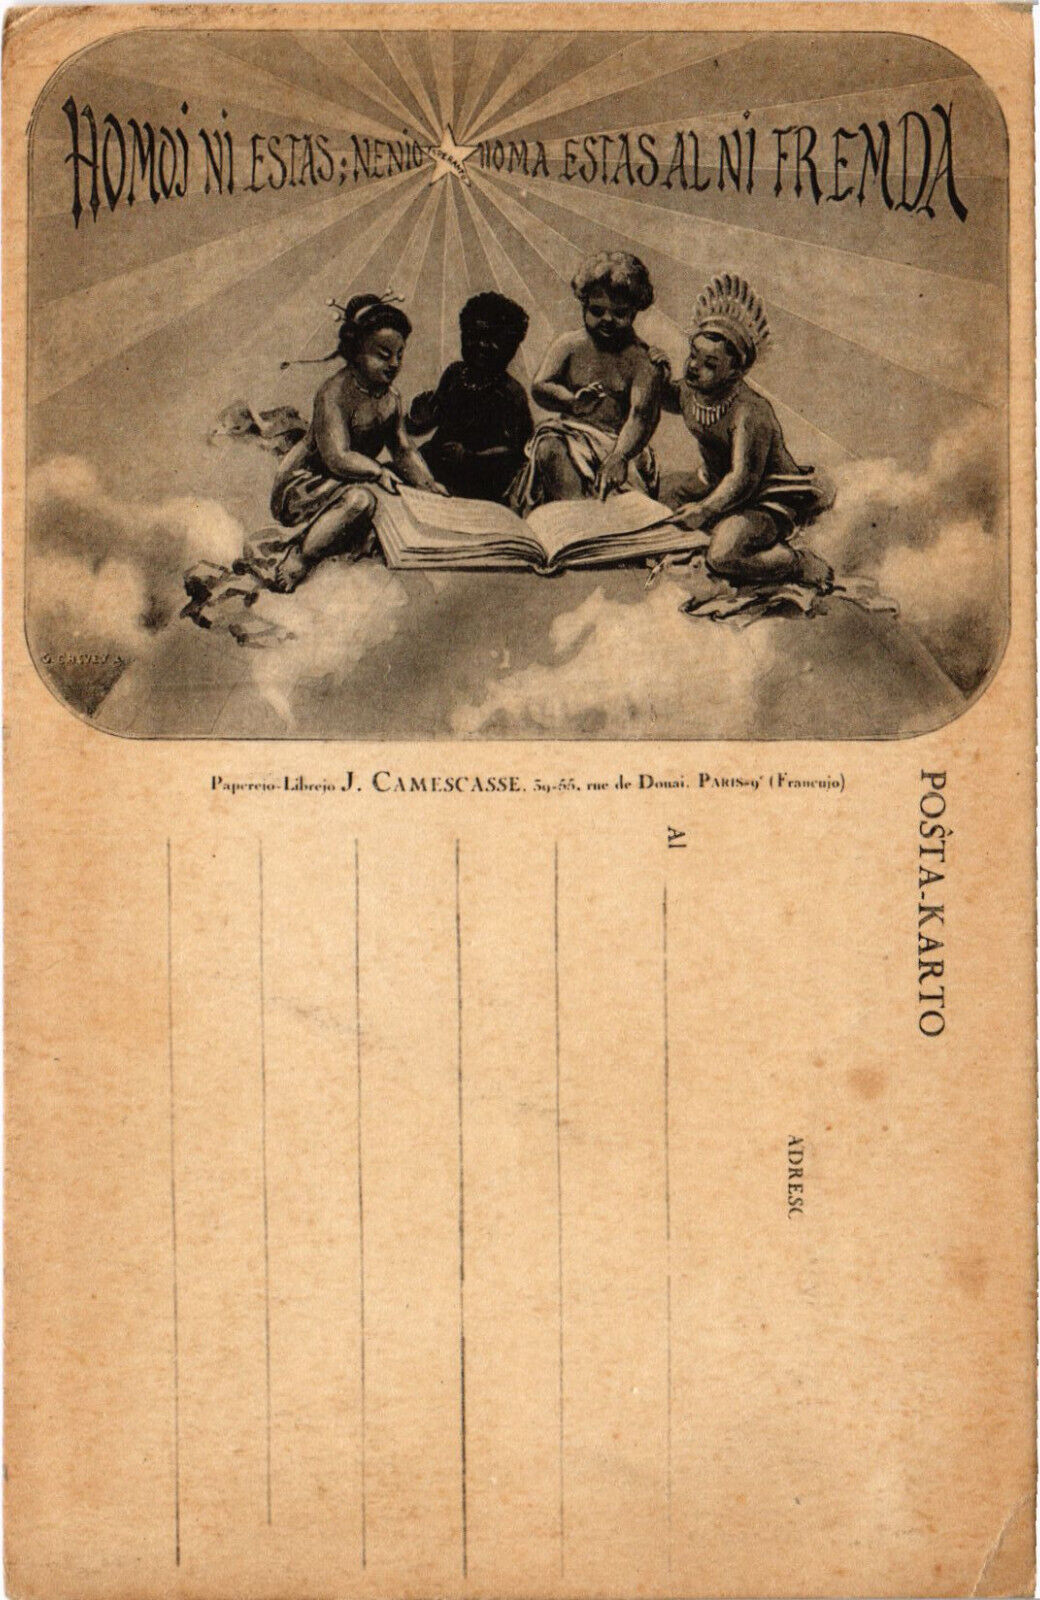 ESPERANTO, HOMOJ NI ESTAS NENIO PC, Vintage Postcard (b53262)